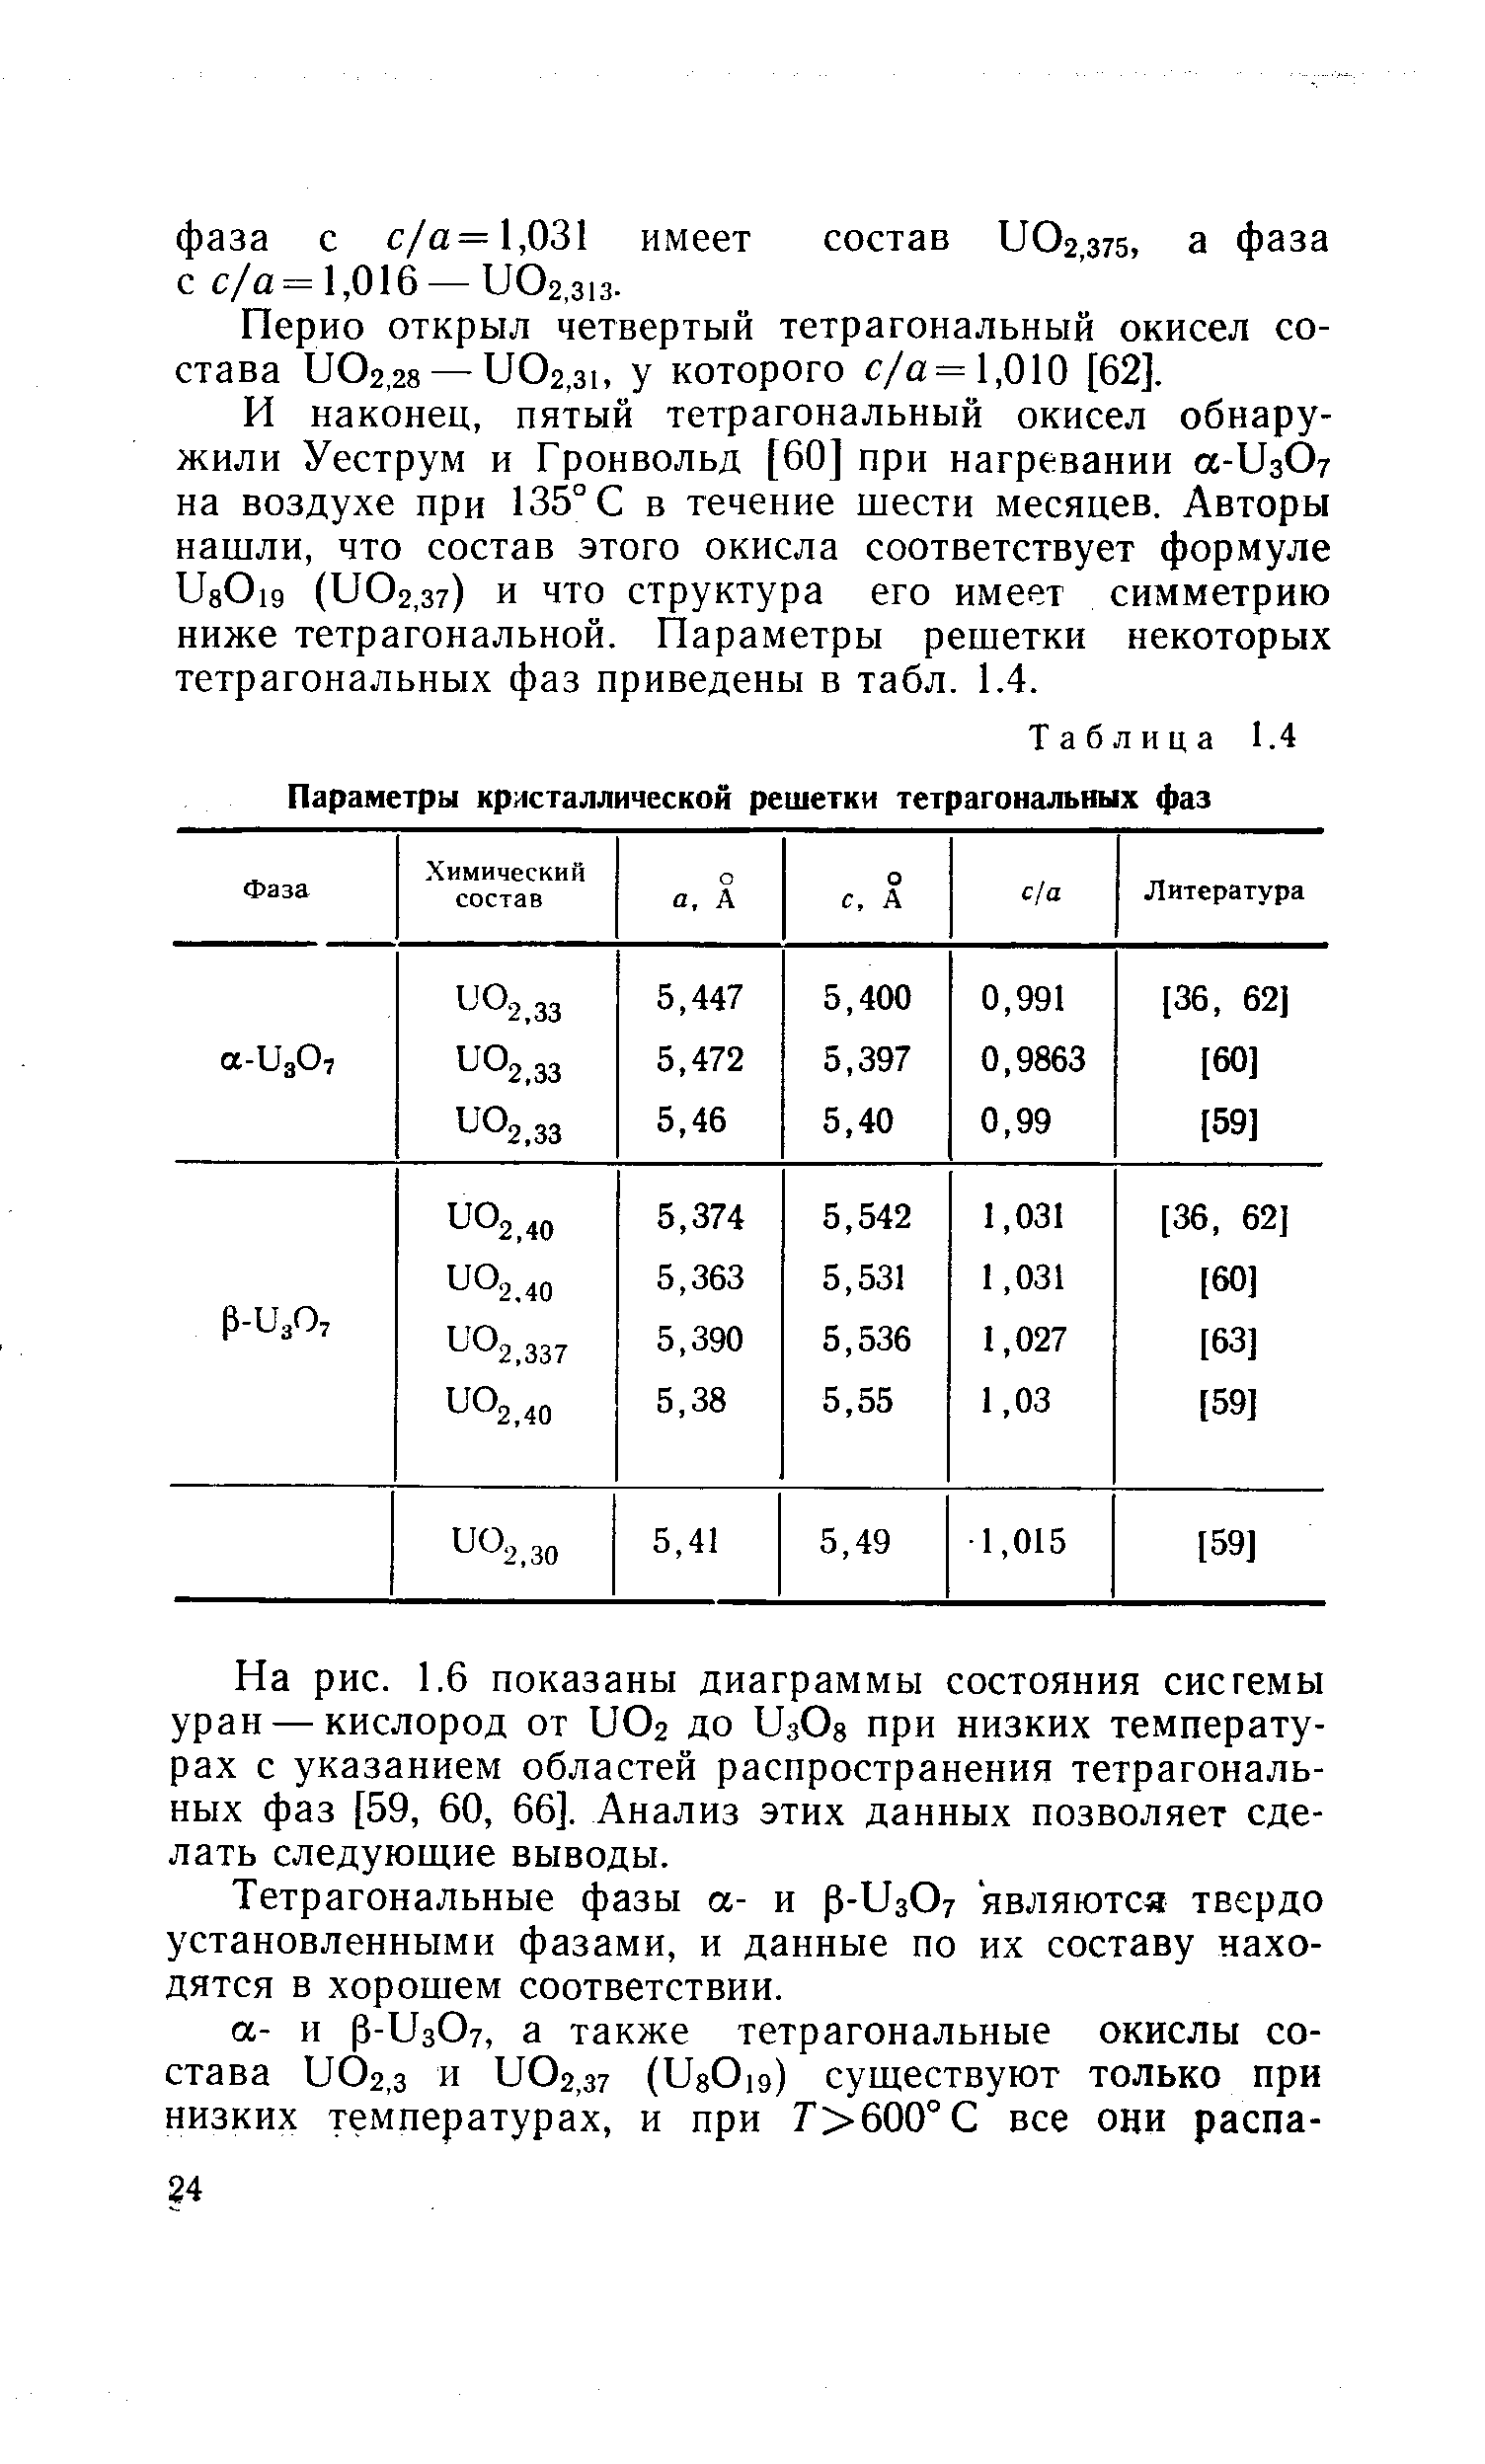 Перио открыл четвертый тетрагональный окисел состава и02,28 —иОг.зь у которого с/а = 1,010 [62].